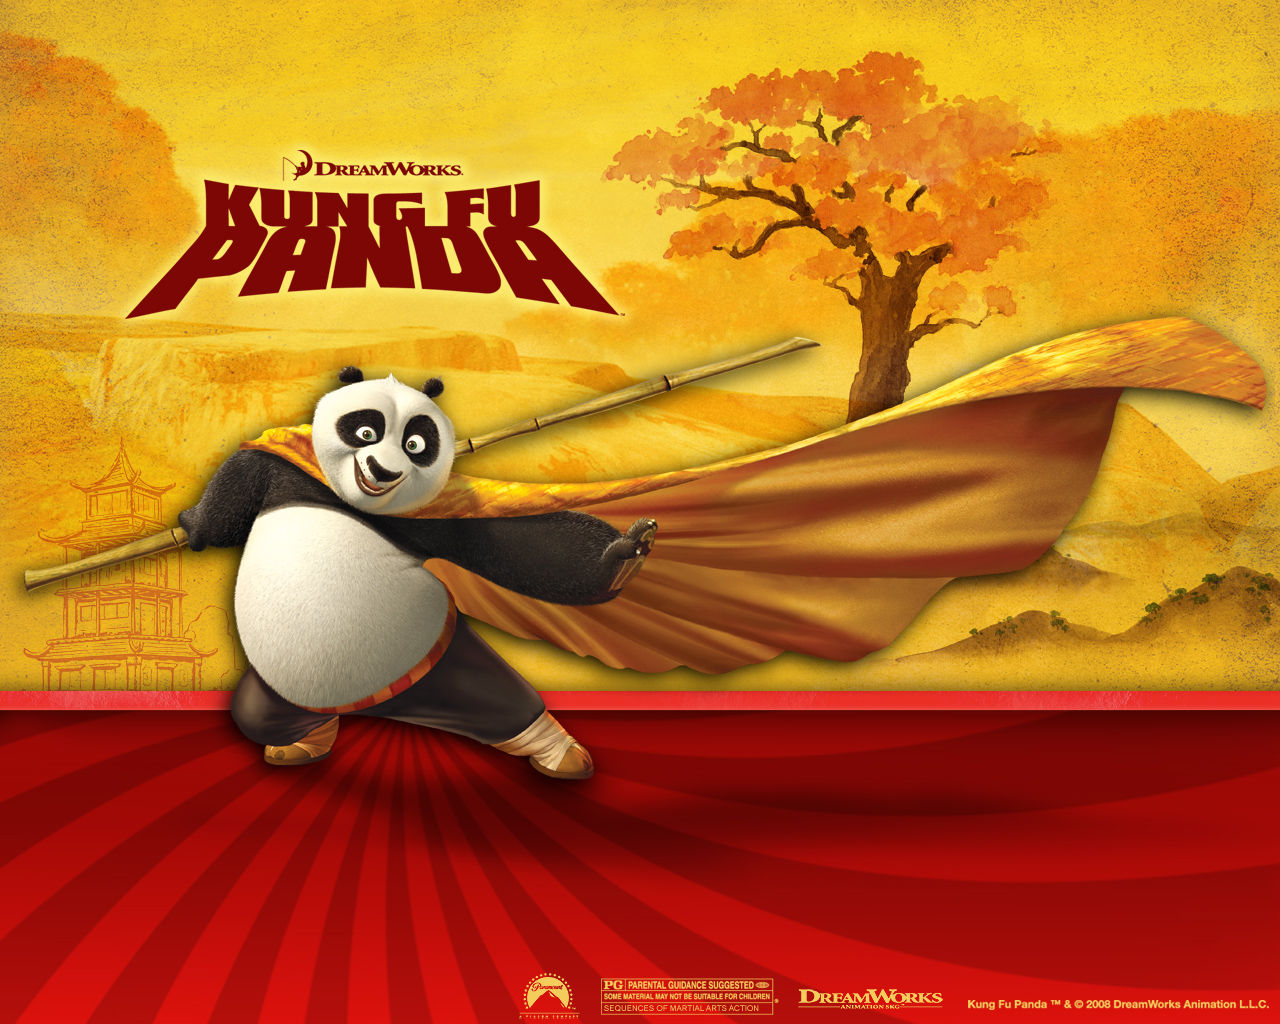 http://3.bp.blogspot.com/-falBtxiTG50/TwBmiO7b2zI/AAAAAAAADhc/1rClex3Bhl8/s1600/Kung+Fu+Panda+023.jpg